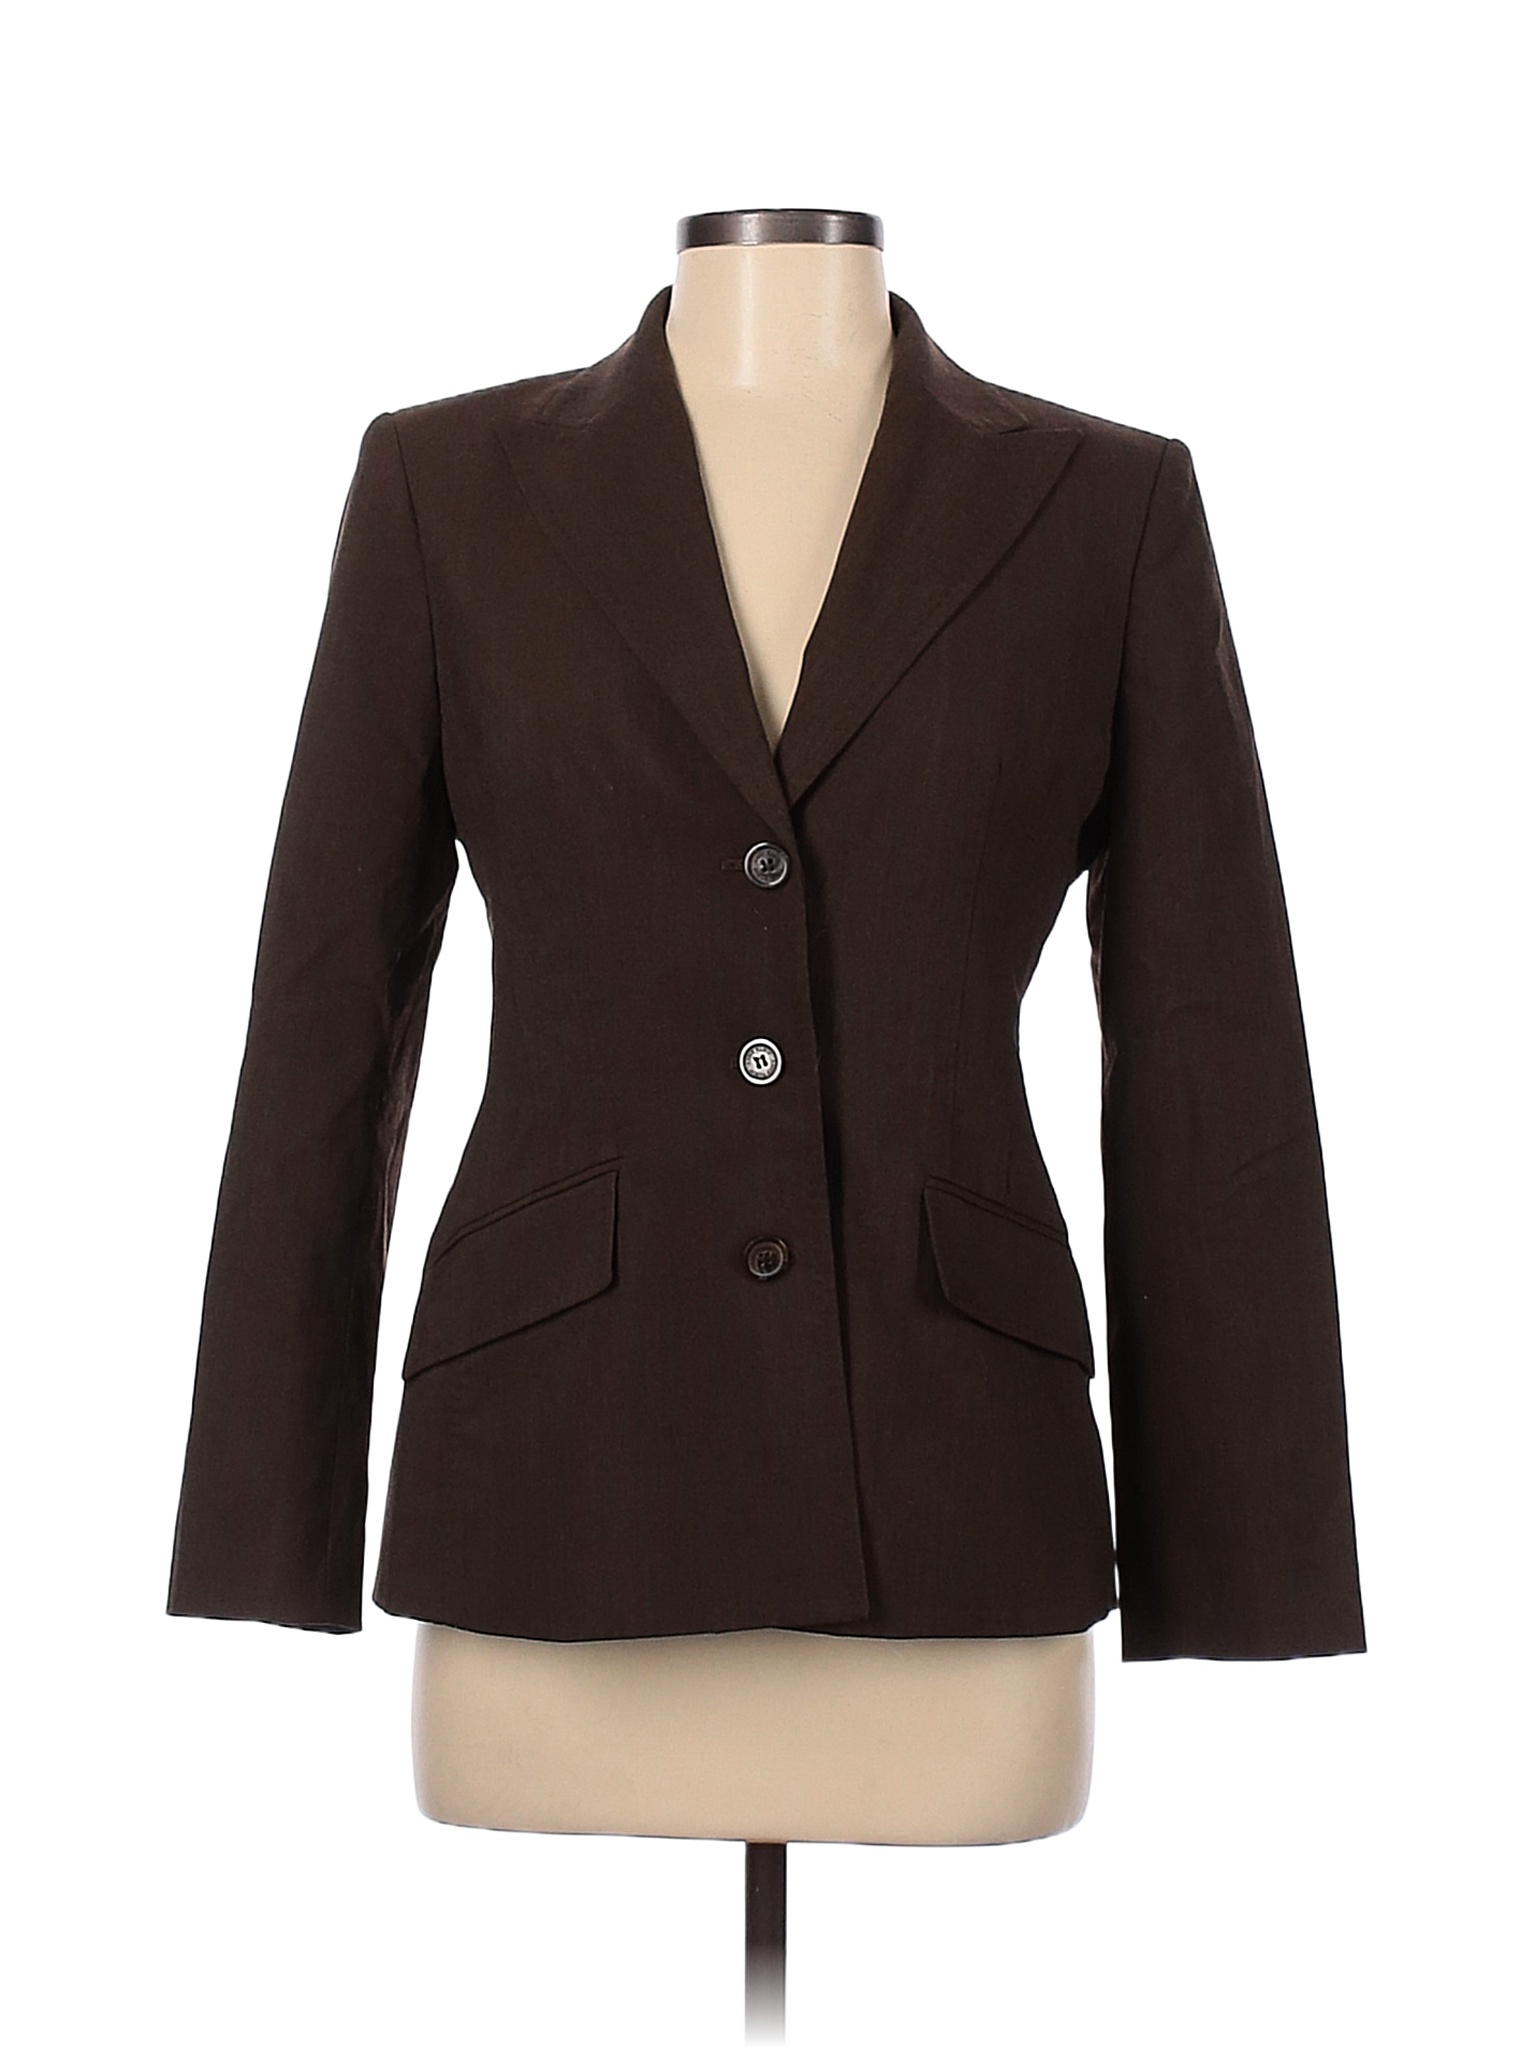 Anne Klein Colored Brown Blazer Size 6 (Petite) - 86% off | thredUP